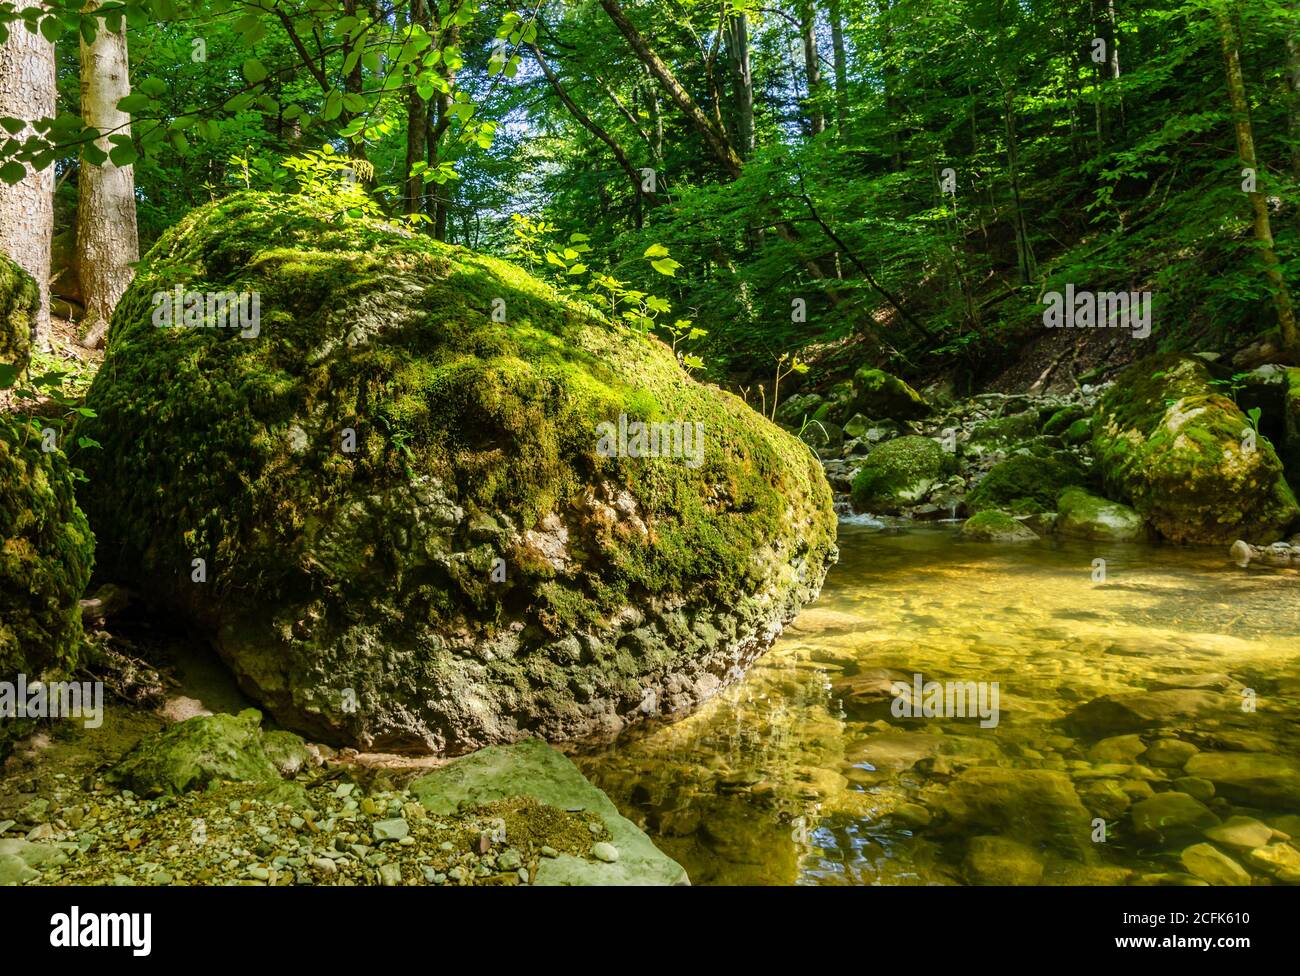 Grand rocher au soleil, surcultivé avec de la mousse verte, au ruisseau d'une forêt naturelle. Grande pierre au bord d'un lit de ruisseau lors d'une journée ensoleillée d'été Banque D'Images